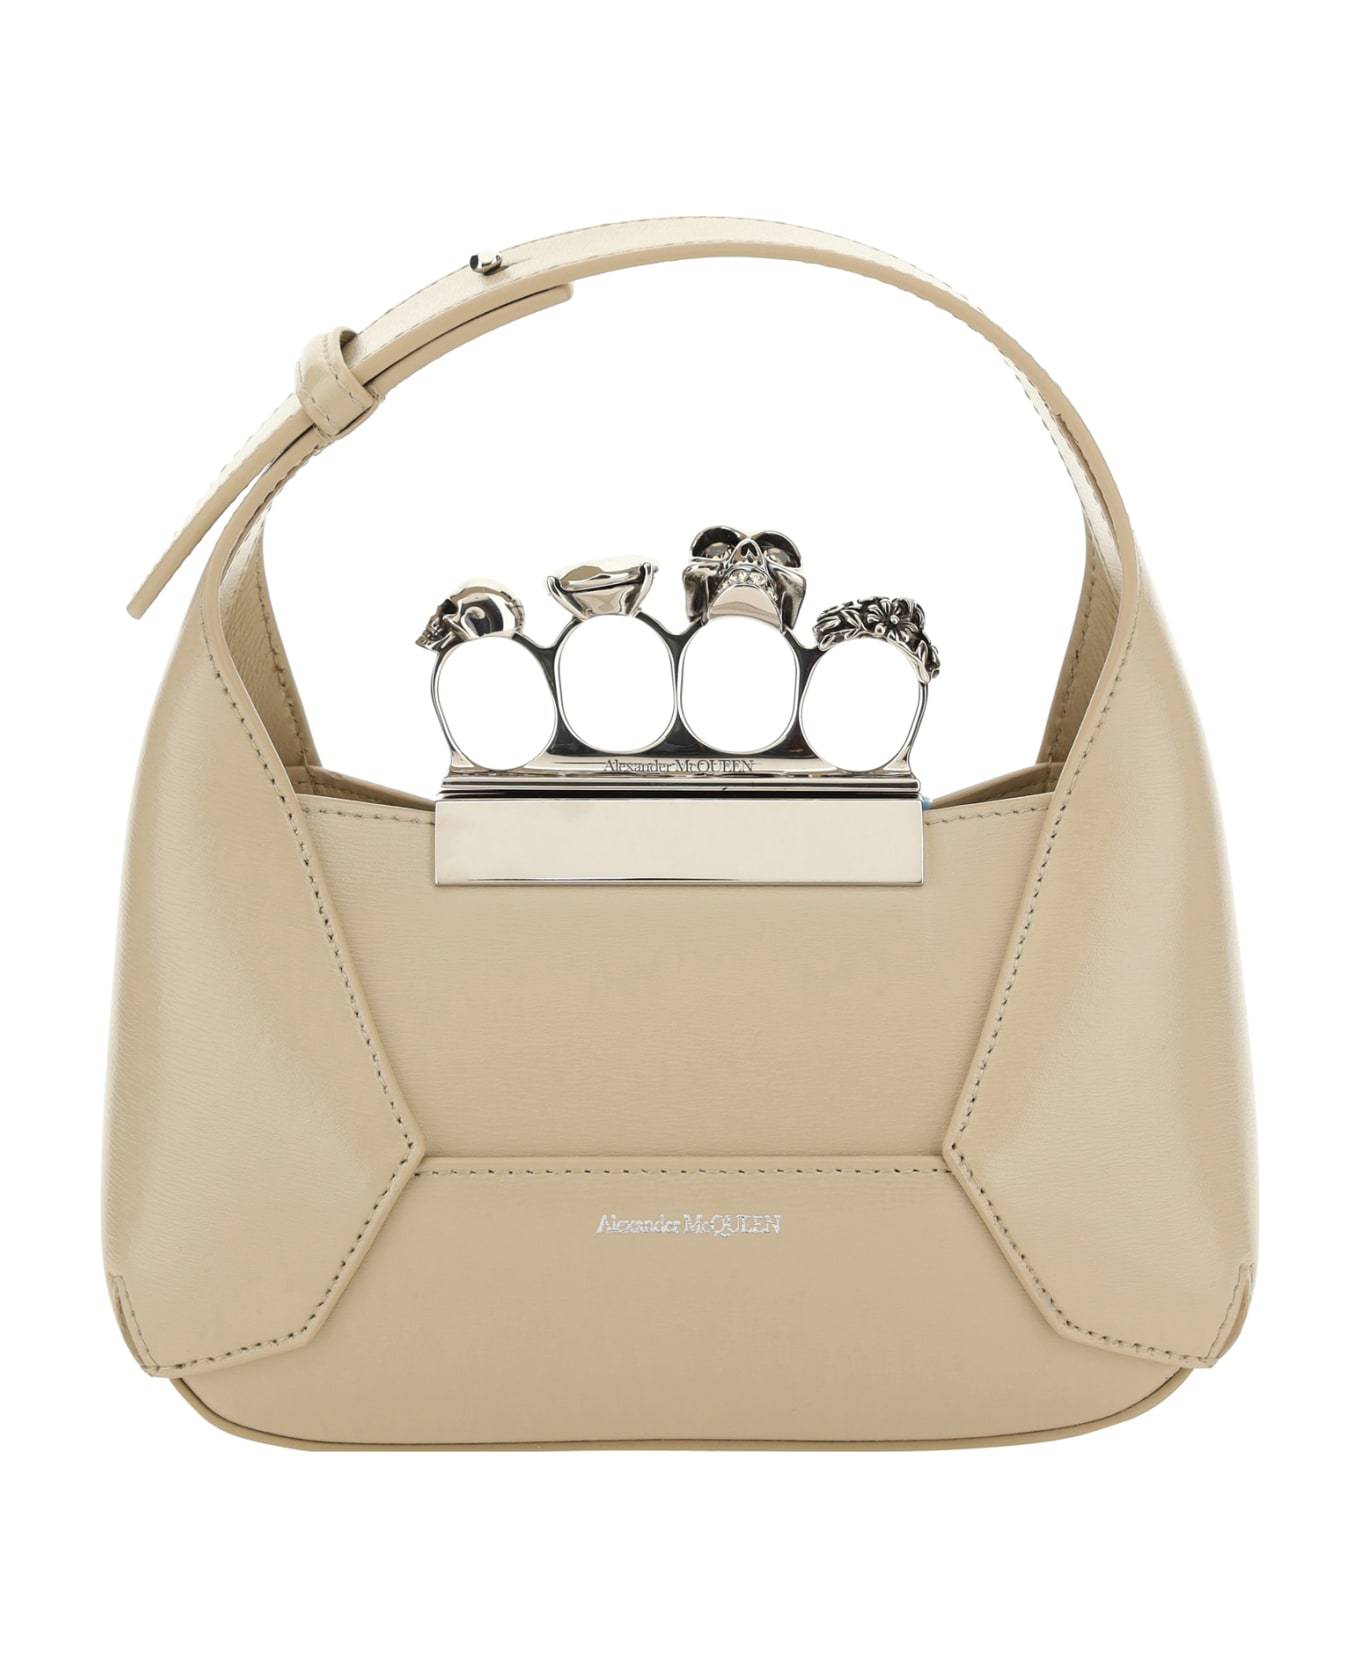 Alexander McQueen Jewelled Hobo Handbag - Beige